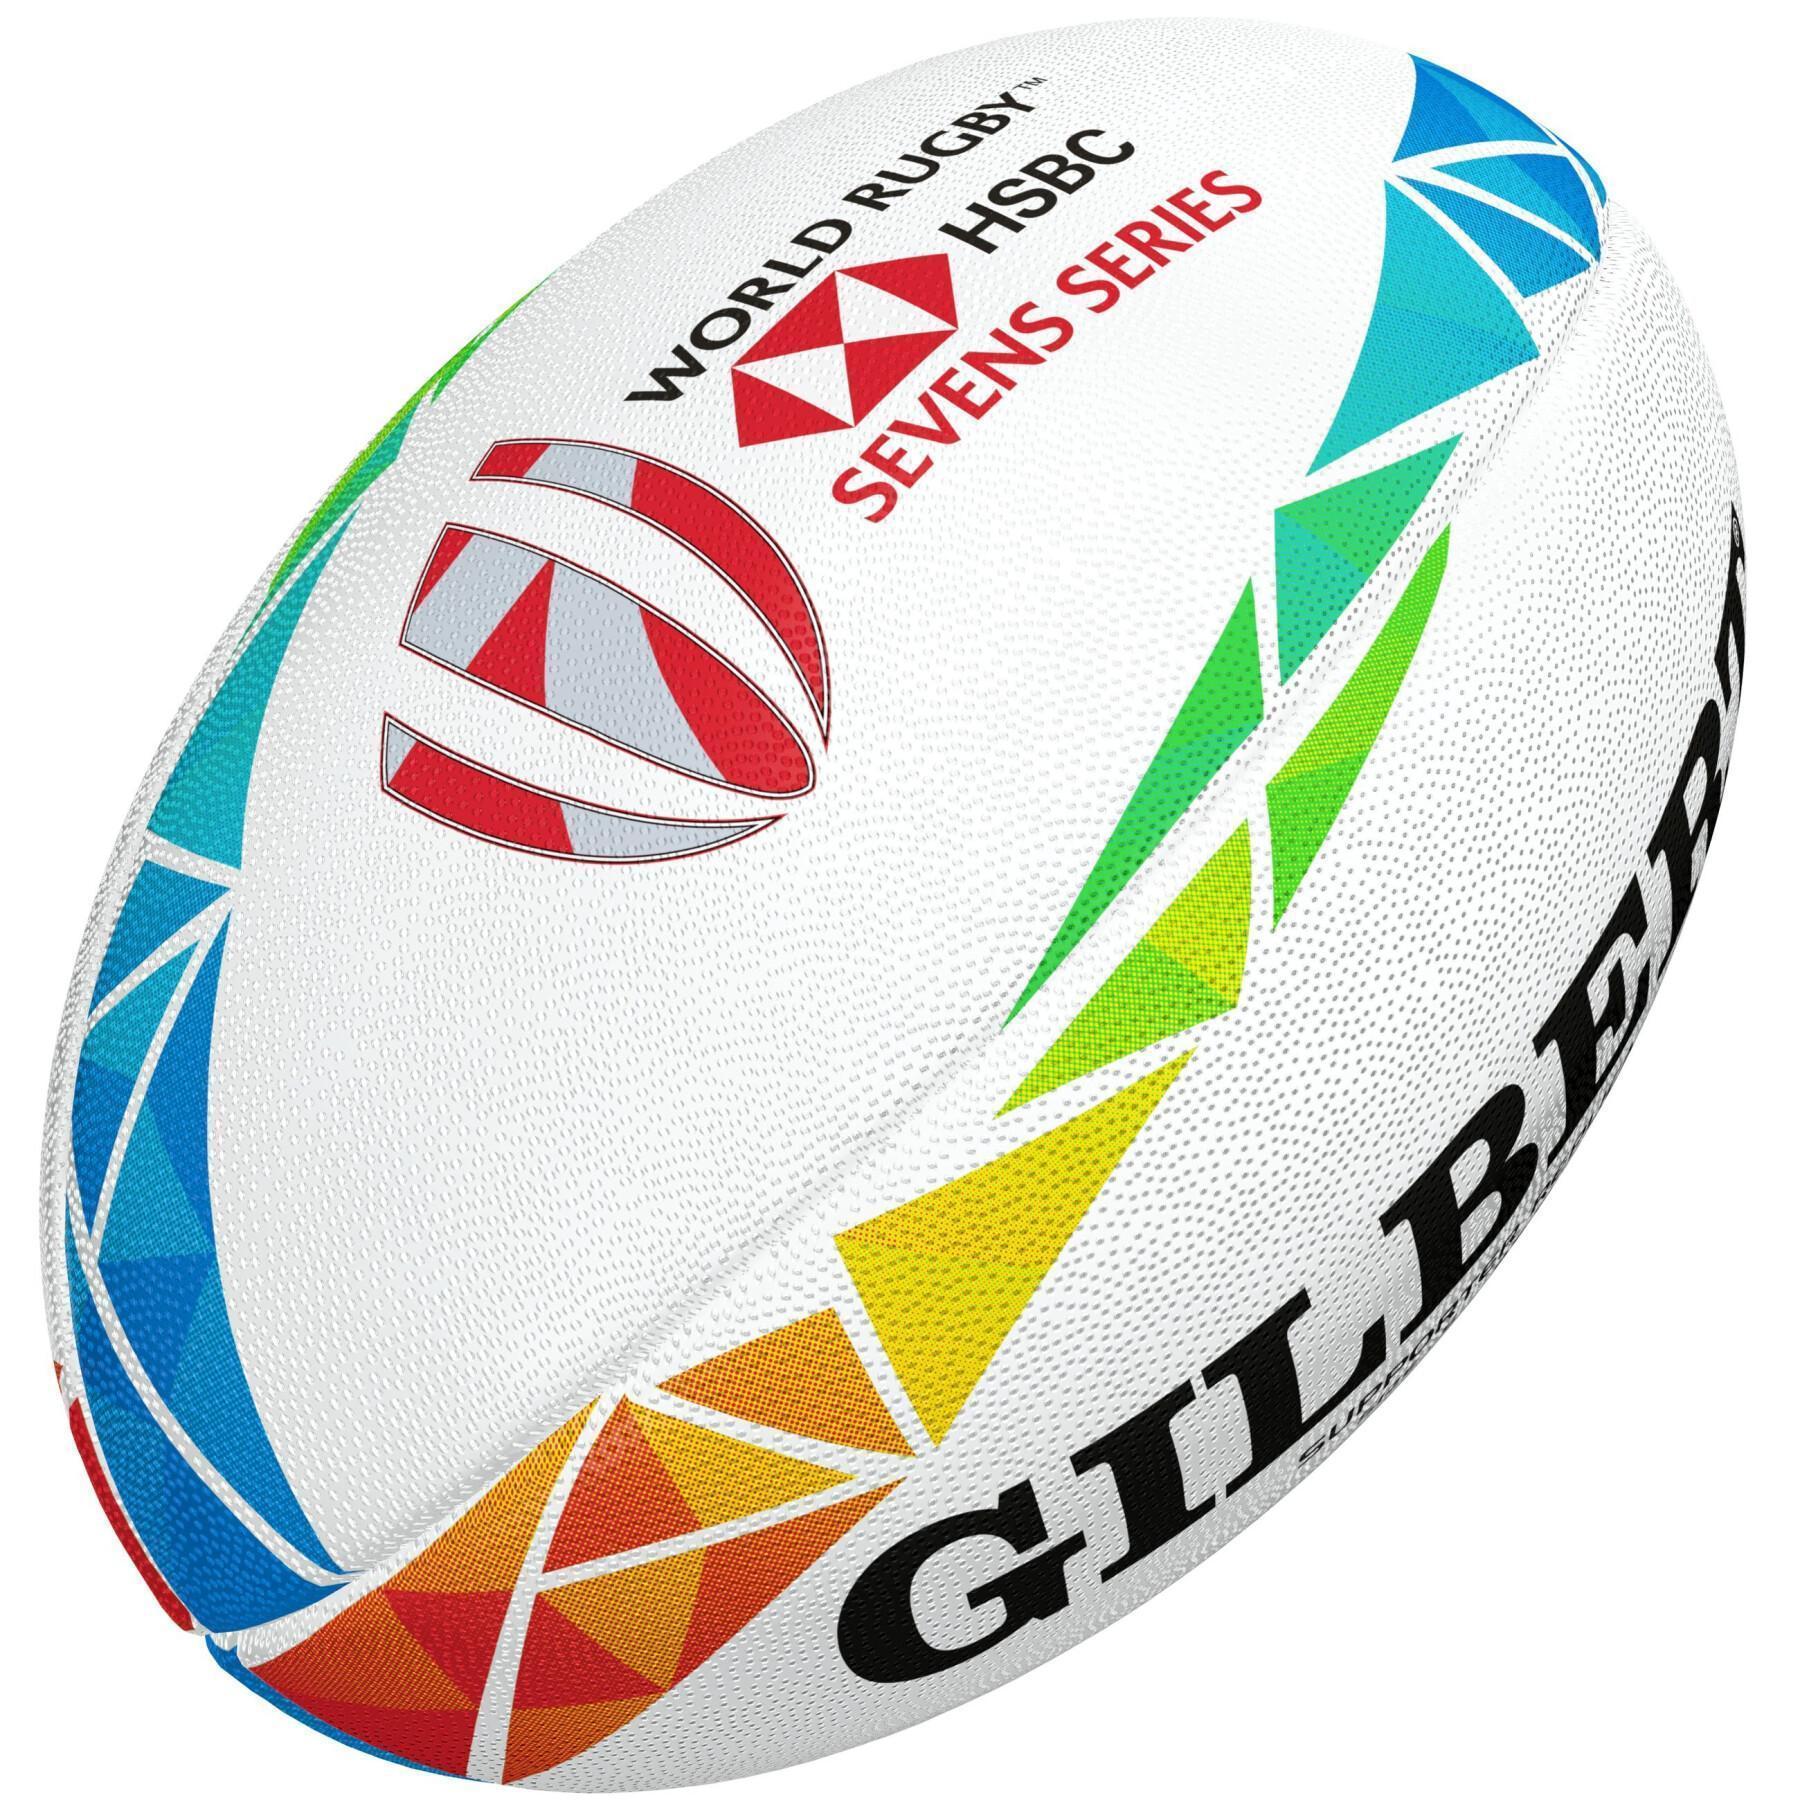 Pallone da rugby Gilbert Hsbc World